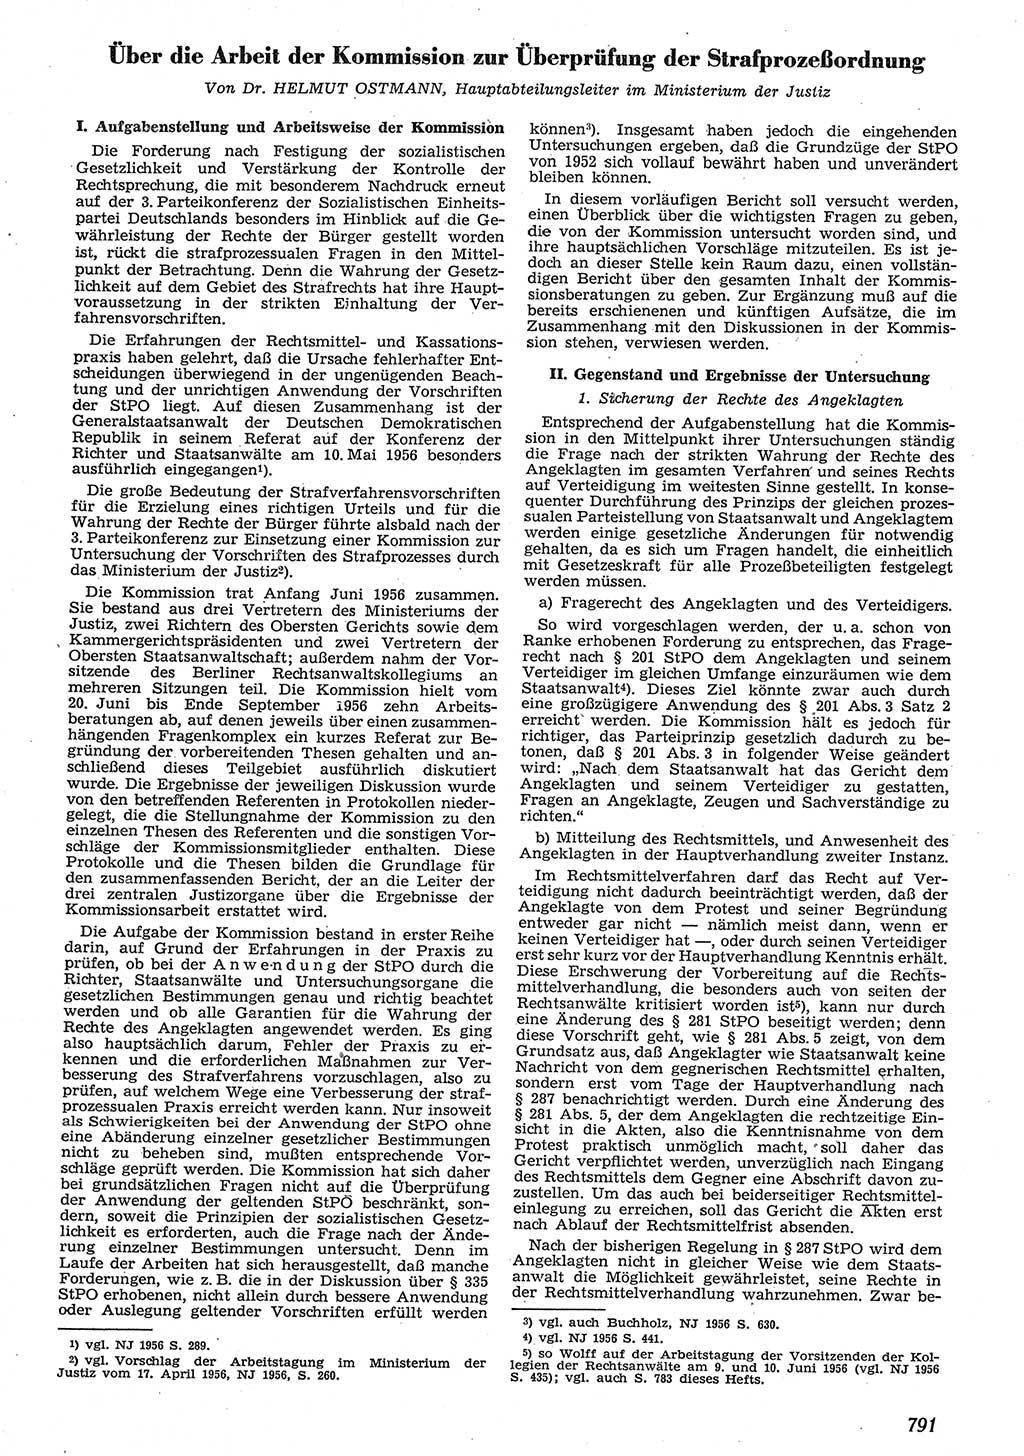 Neue Justiz (NJ), Zeitschrift für Recht und Rechtswissenschaft [Deutsche Demokratische Republik (DDR)], 10. Jahrgang 1956, Seite 791 (NJ DDR 1956, S. 791)